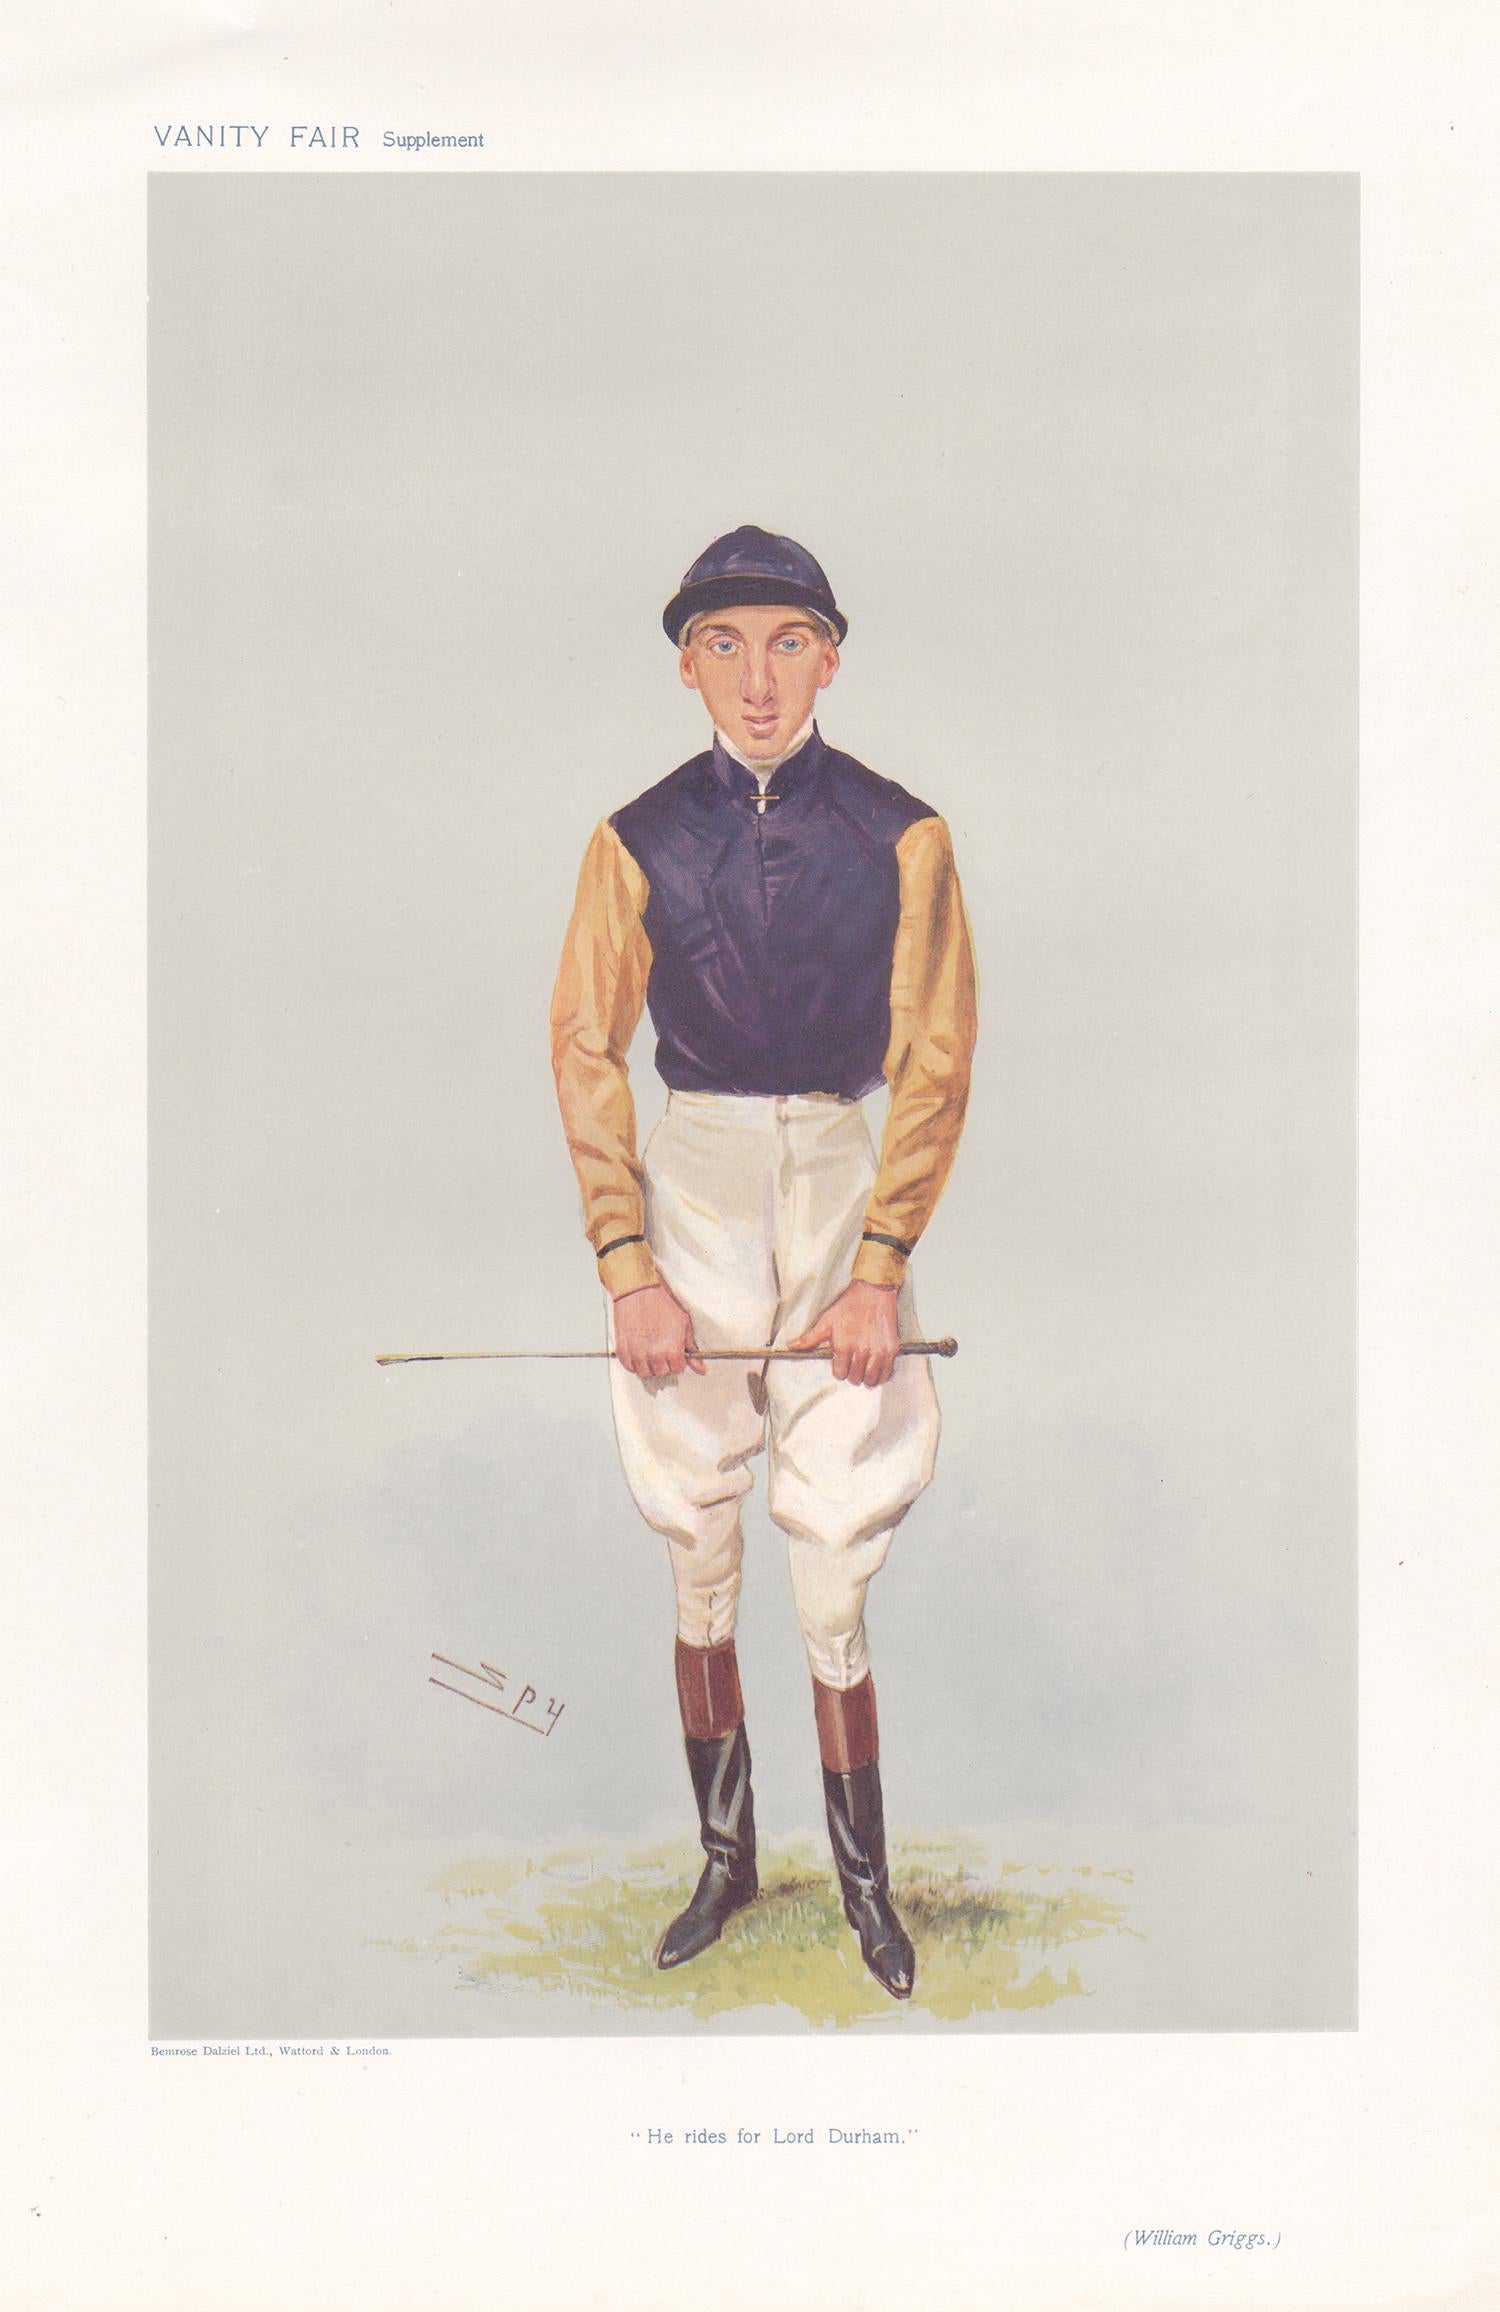 Portrait Print Sir Leslie Ward - William Griggs, jockey, chromolithographie de portrait de course de chevaux de Vanity Fair, 1906